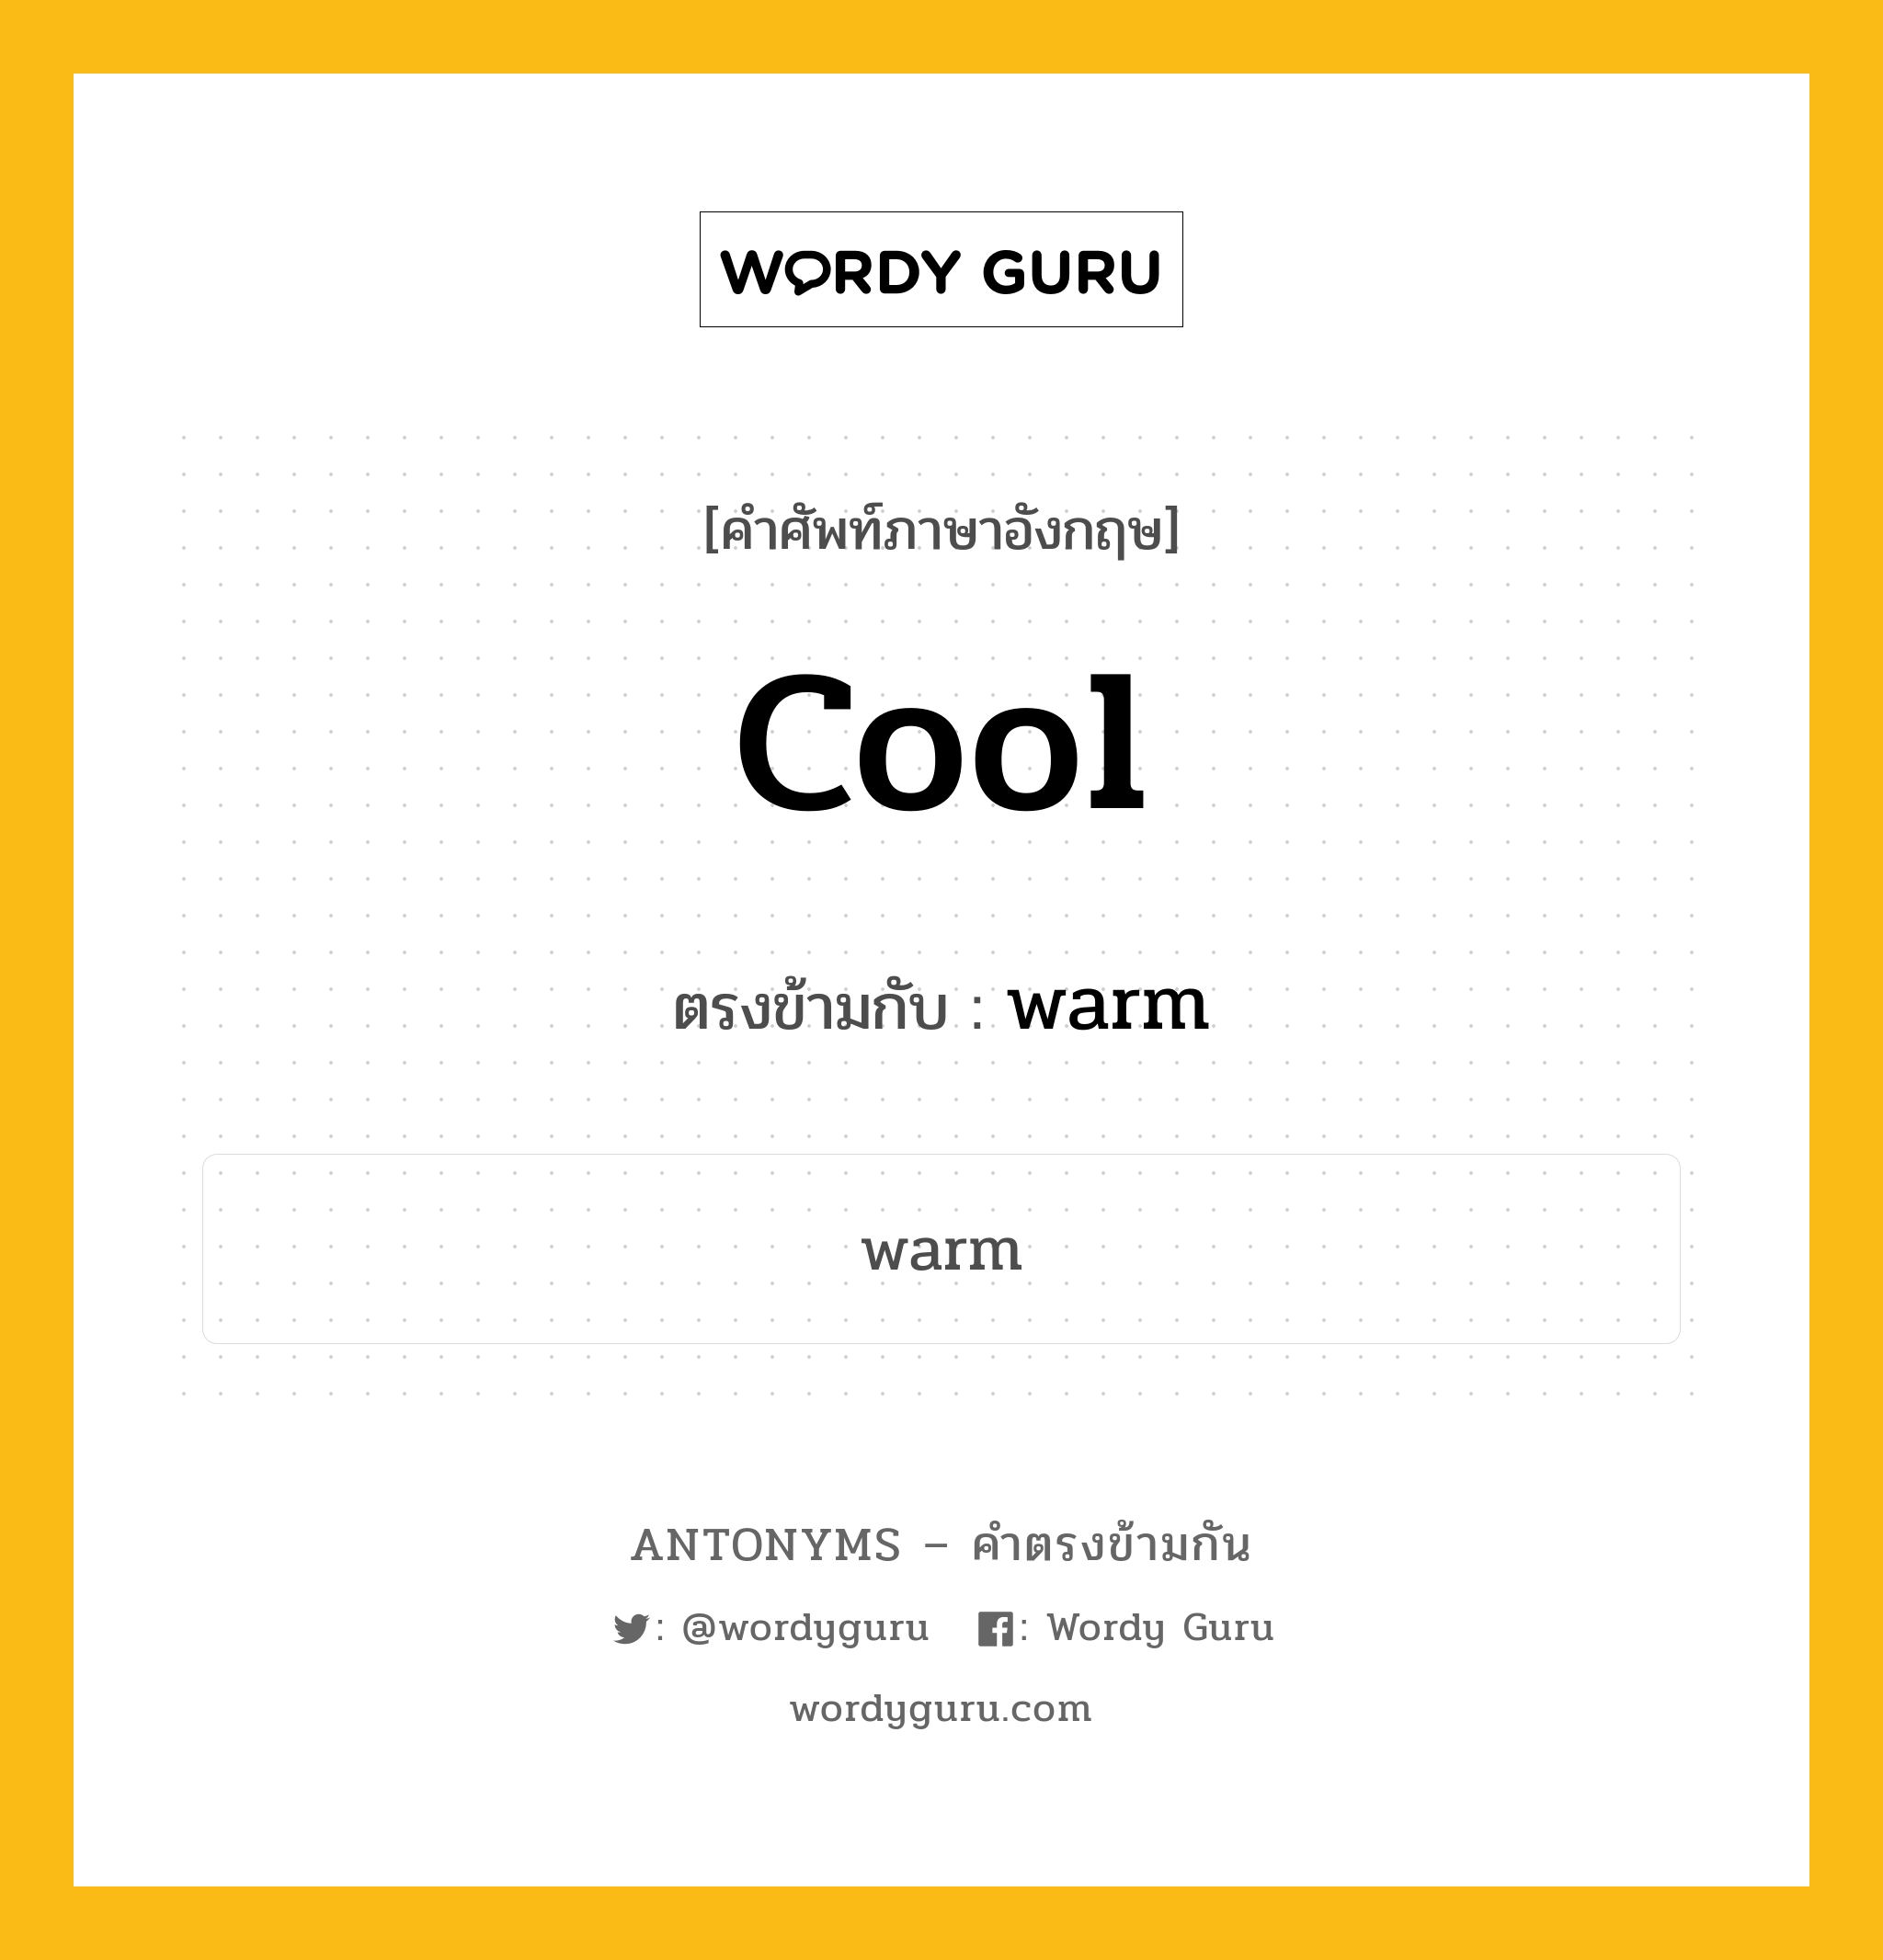 cool เป็นคำตรงข้ามกับคำไหนบ้าง?, คำศัพท์ภาษาอังกฤษ cool ตรงข้ามกับ warm หมวด warm